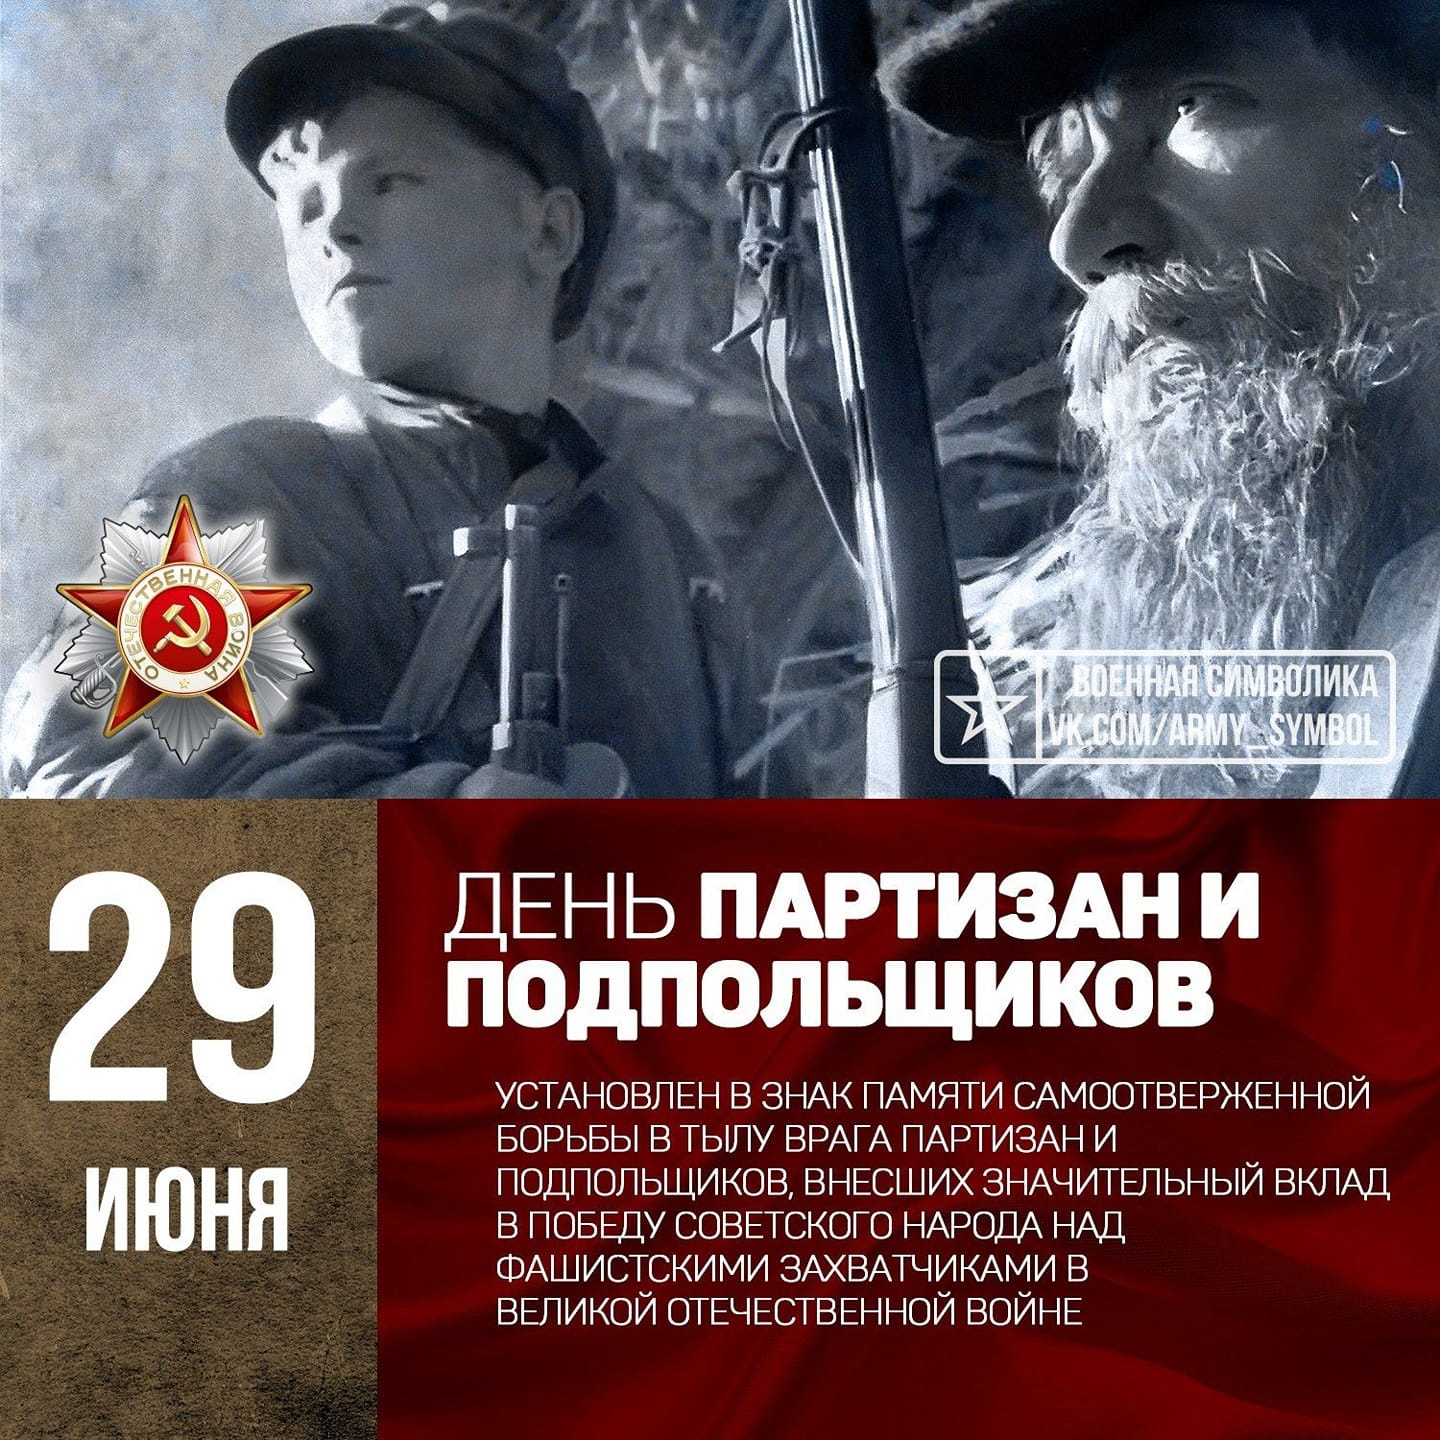 29 июня в России отмечается День партизан и подпольщиков.